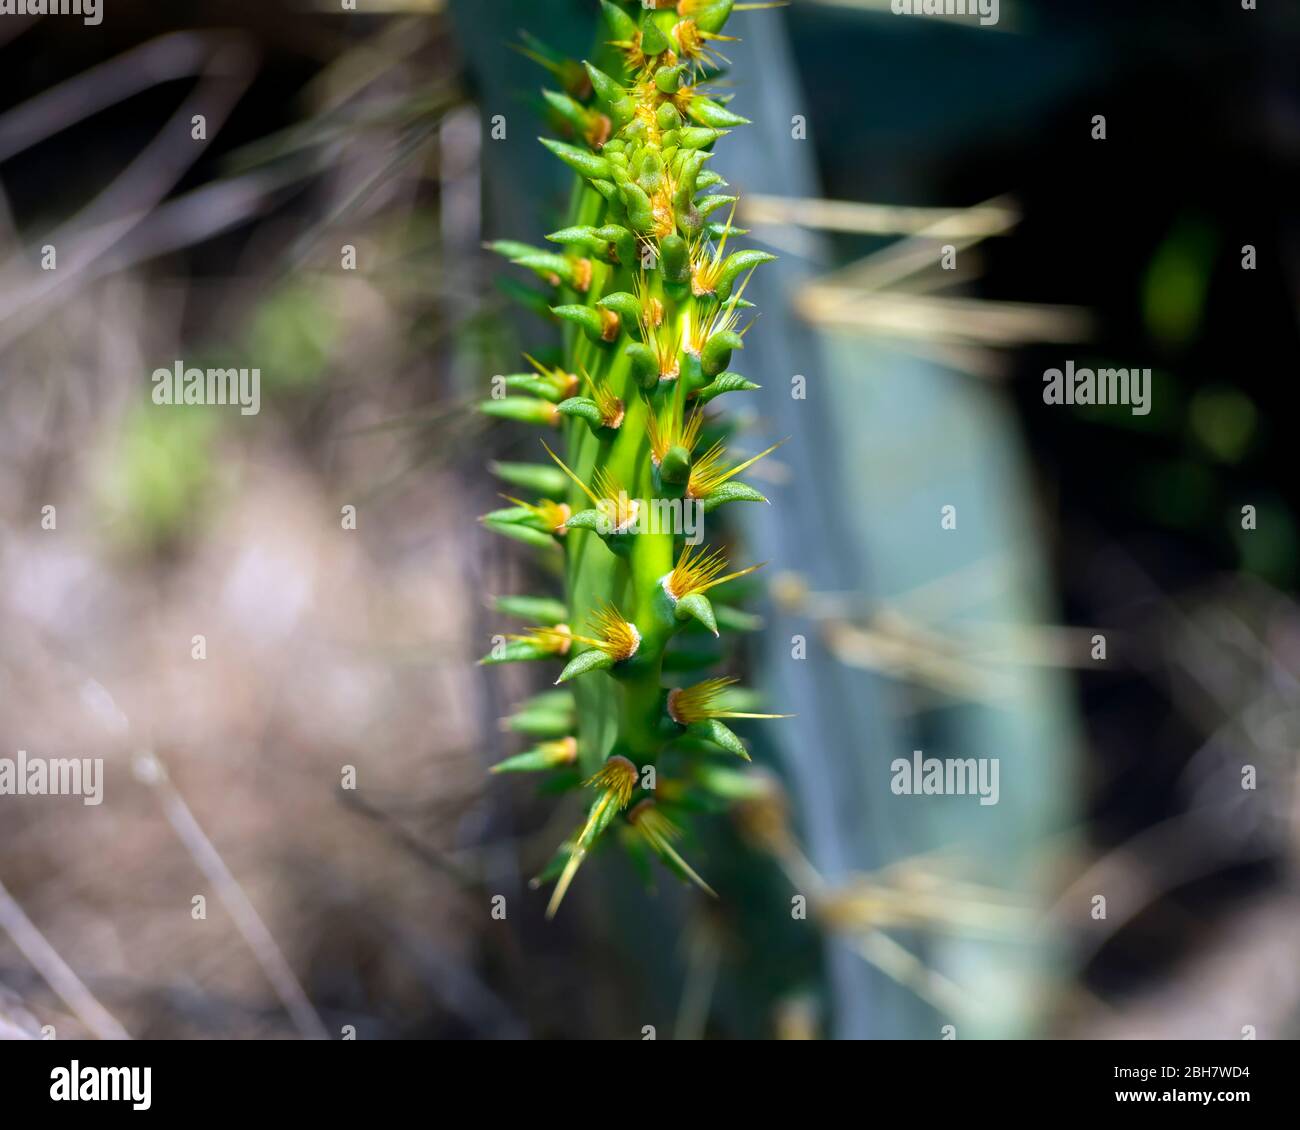 Une fermeture des épines sur le bord du tampon d'un cactus Opuntia ou de Preckly Pear. Banque D'Images